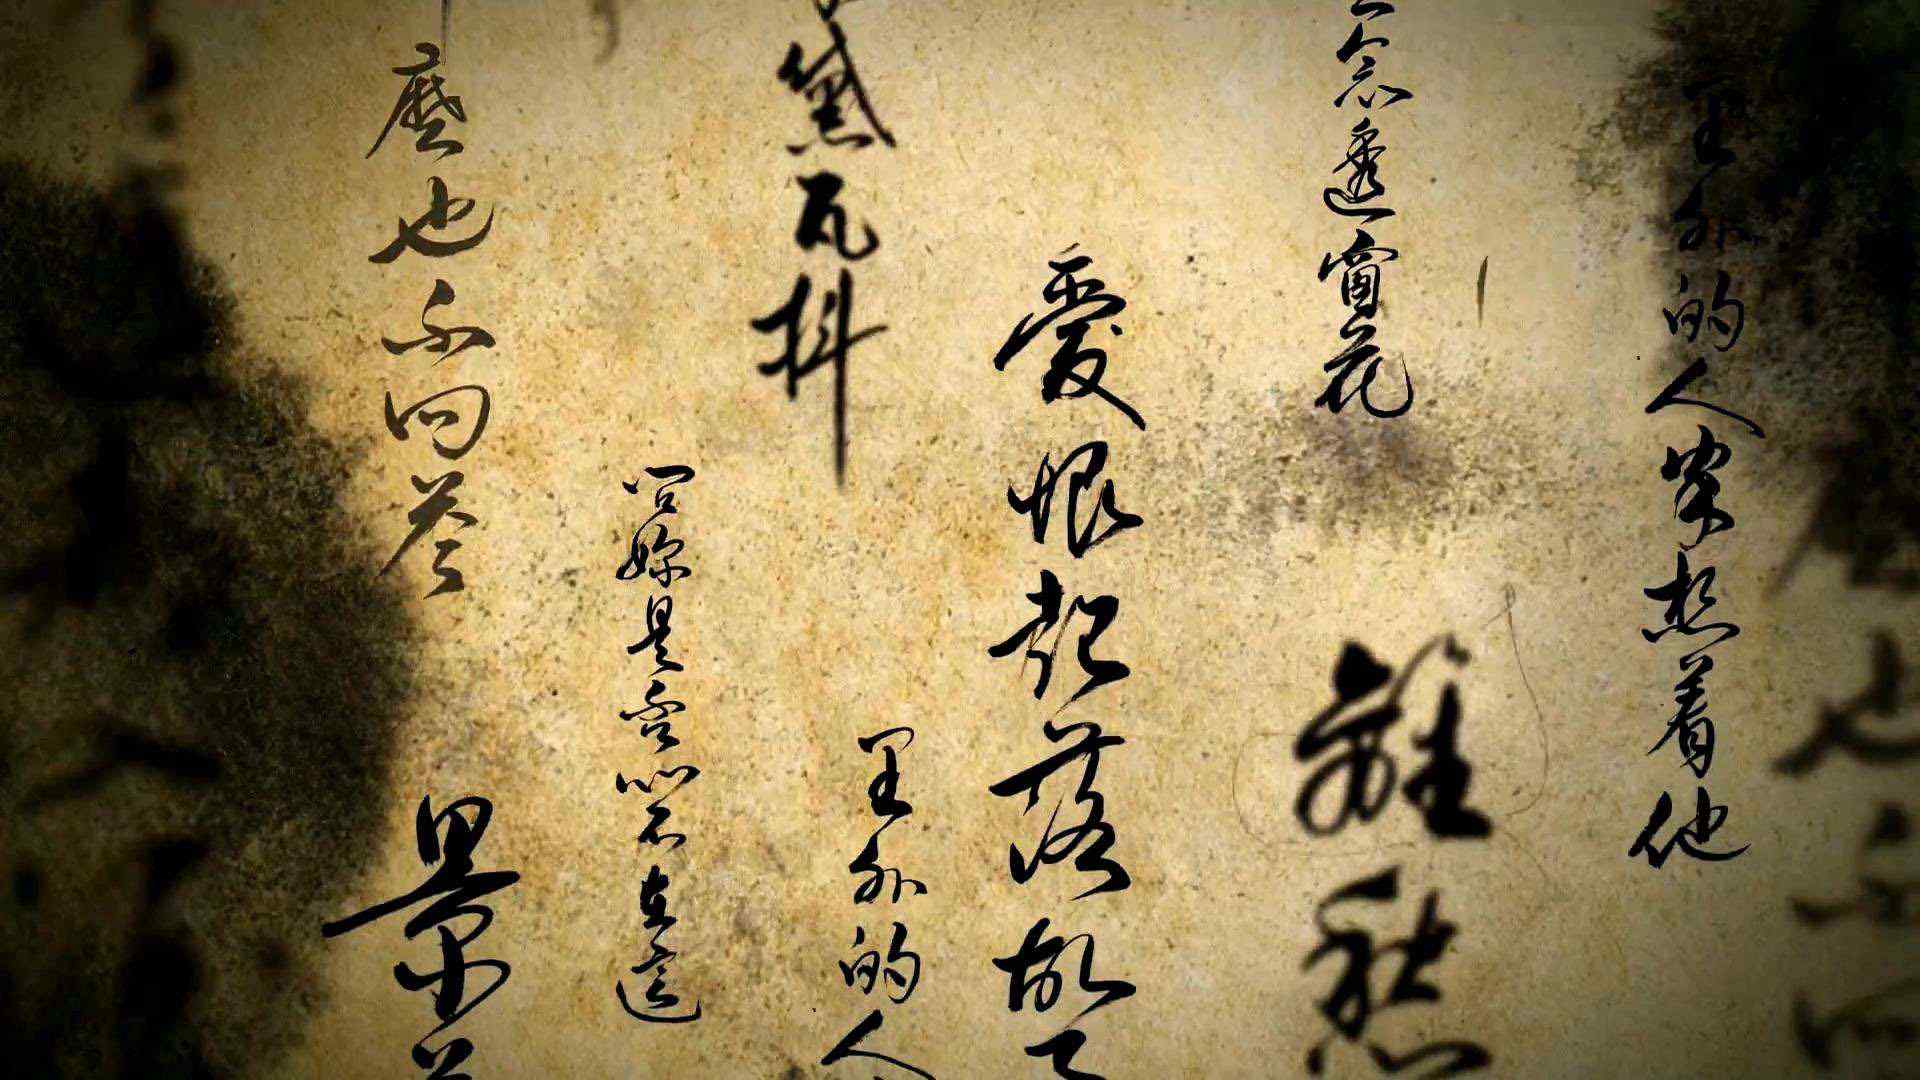 周杰伦《天涯过客》中国风书法歌词图片桌面壁纸